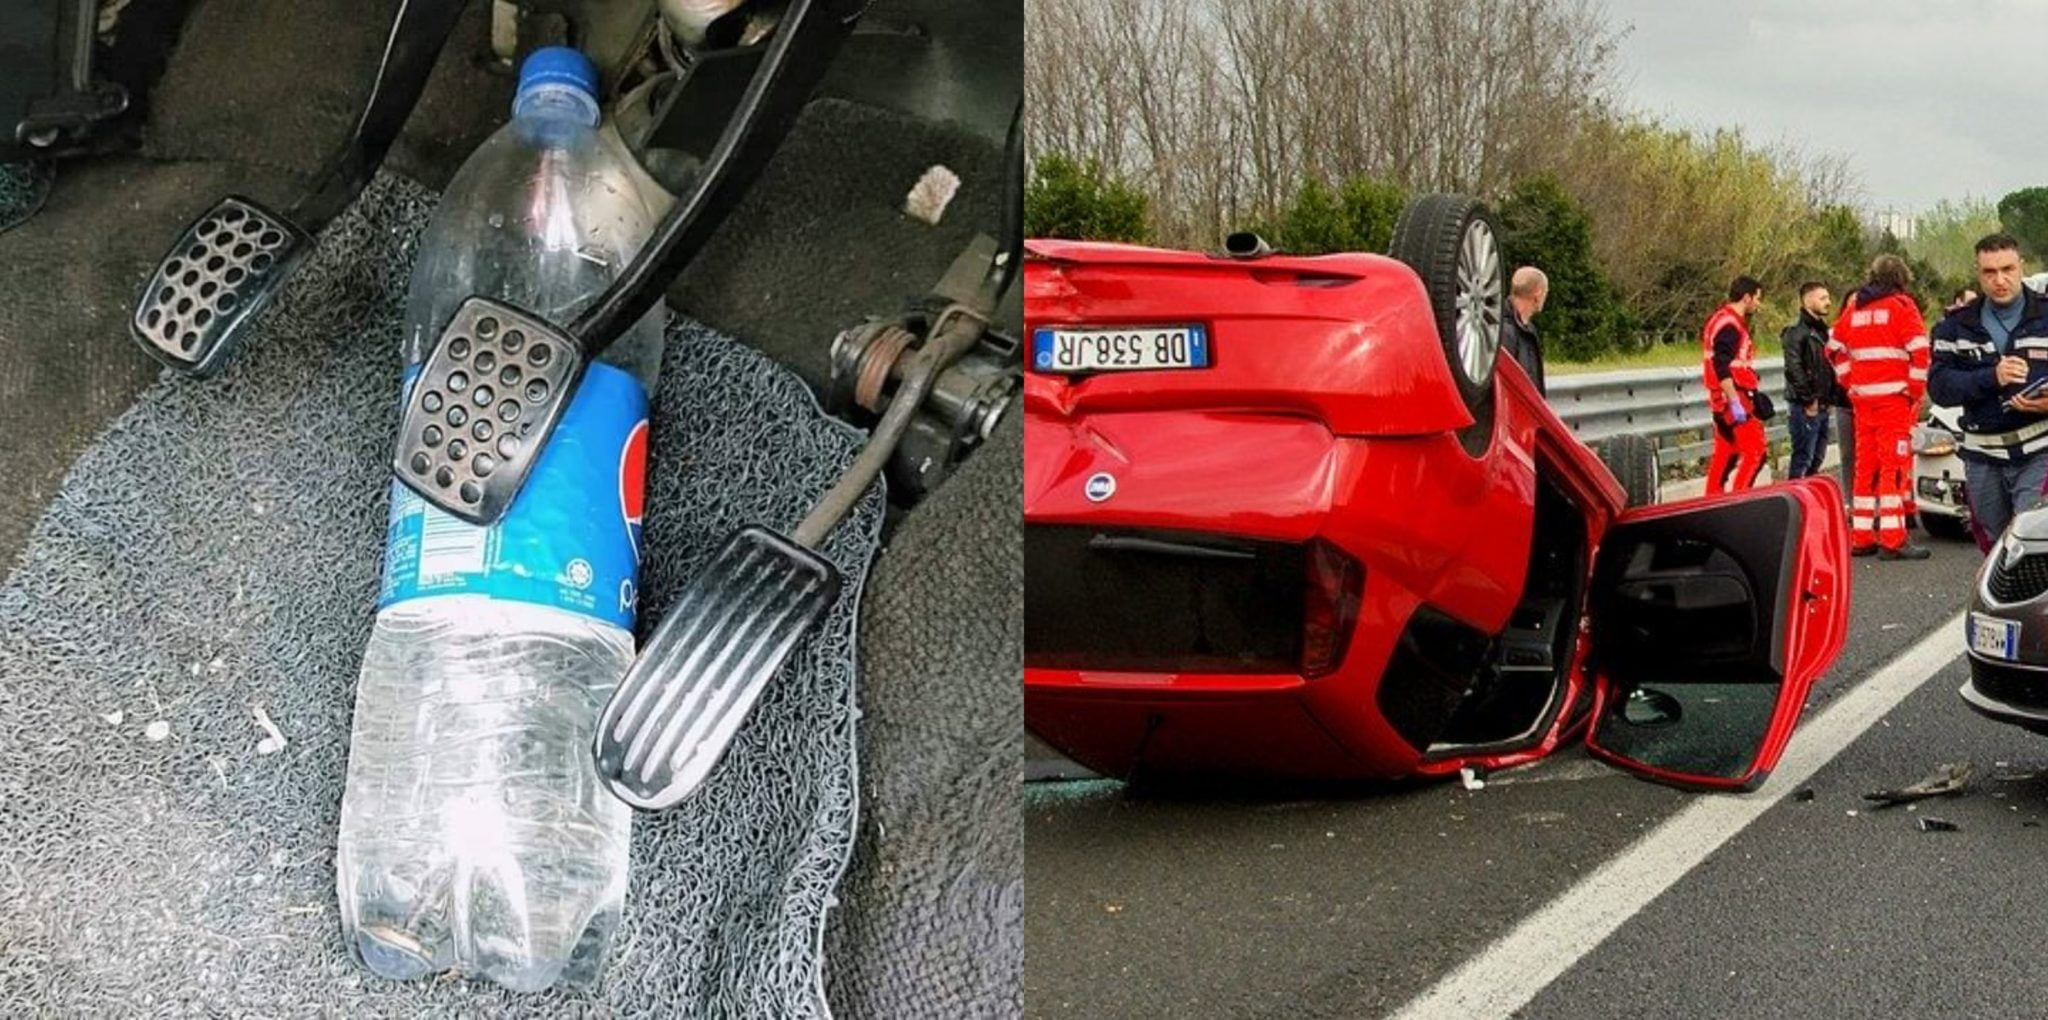 Tenere le bottiglie d'acqua in auto può ribaltare la tua auto